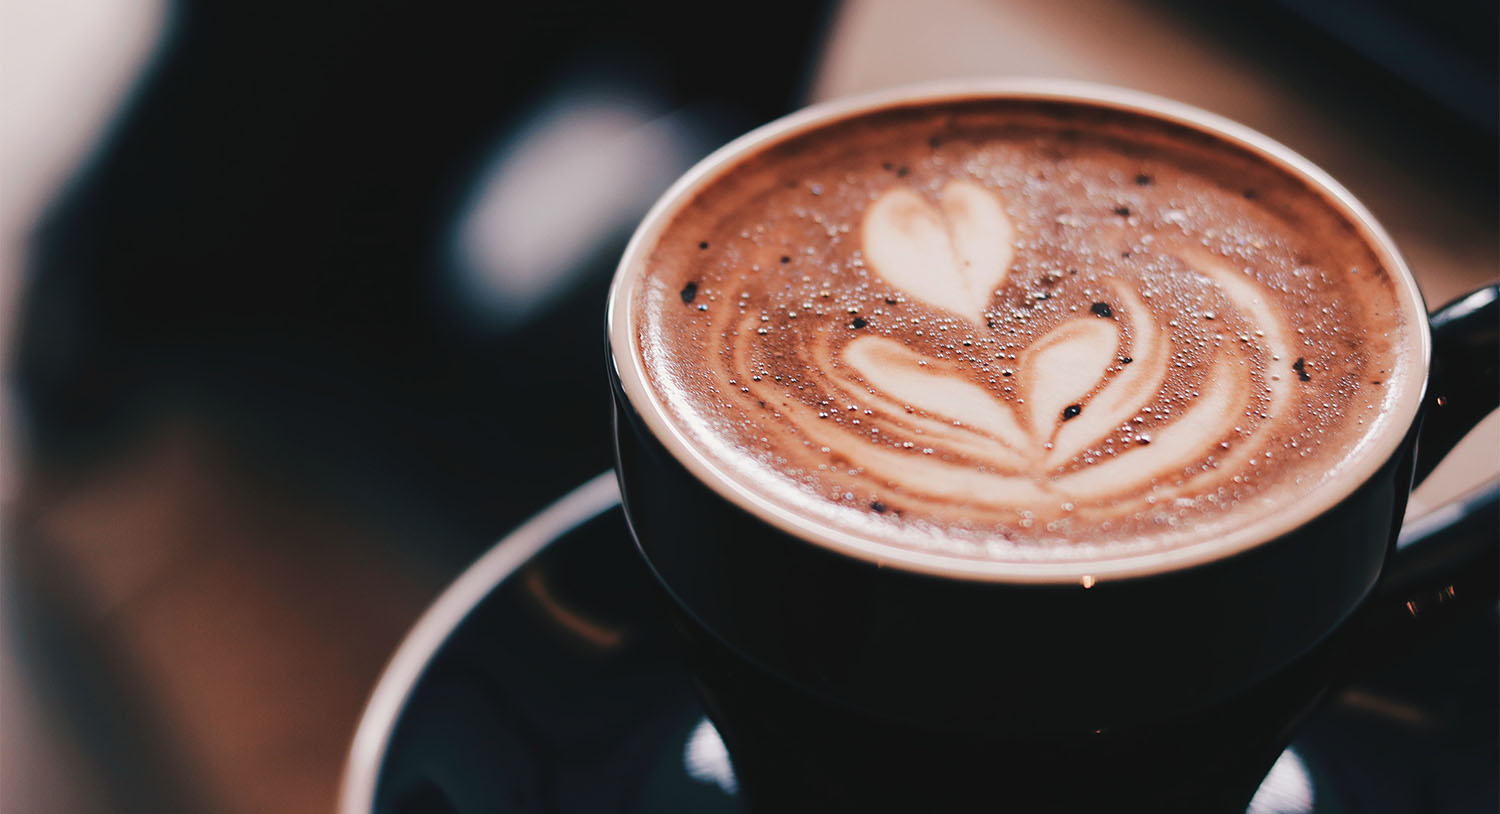 kawa-w-filiżance-pianka-spienione-mleko-cappuccino-najdroższa-kawa-świata-kopi-luwak-kawa-z-odchodów-cena-kawy-ciekawostki-informacje